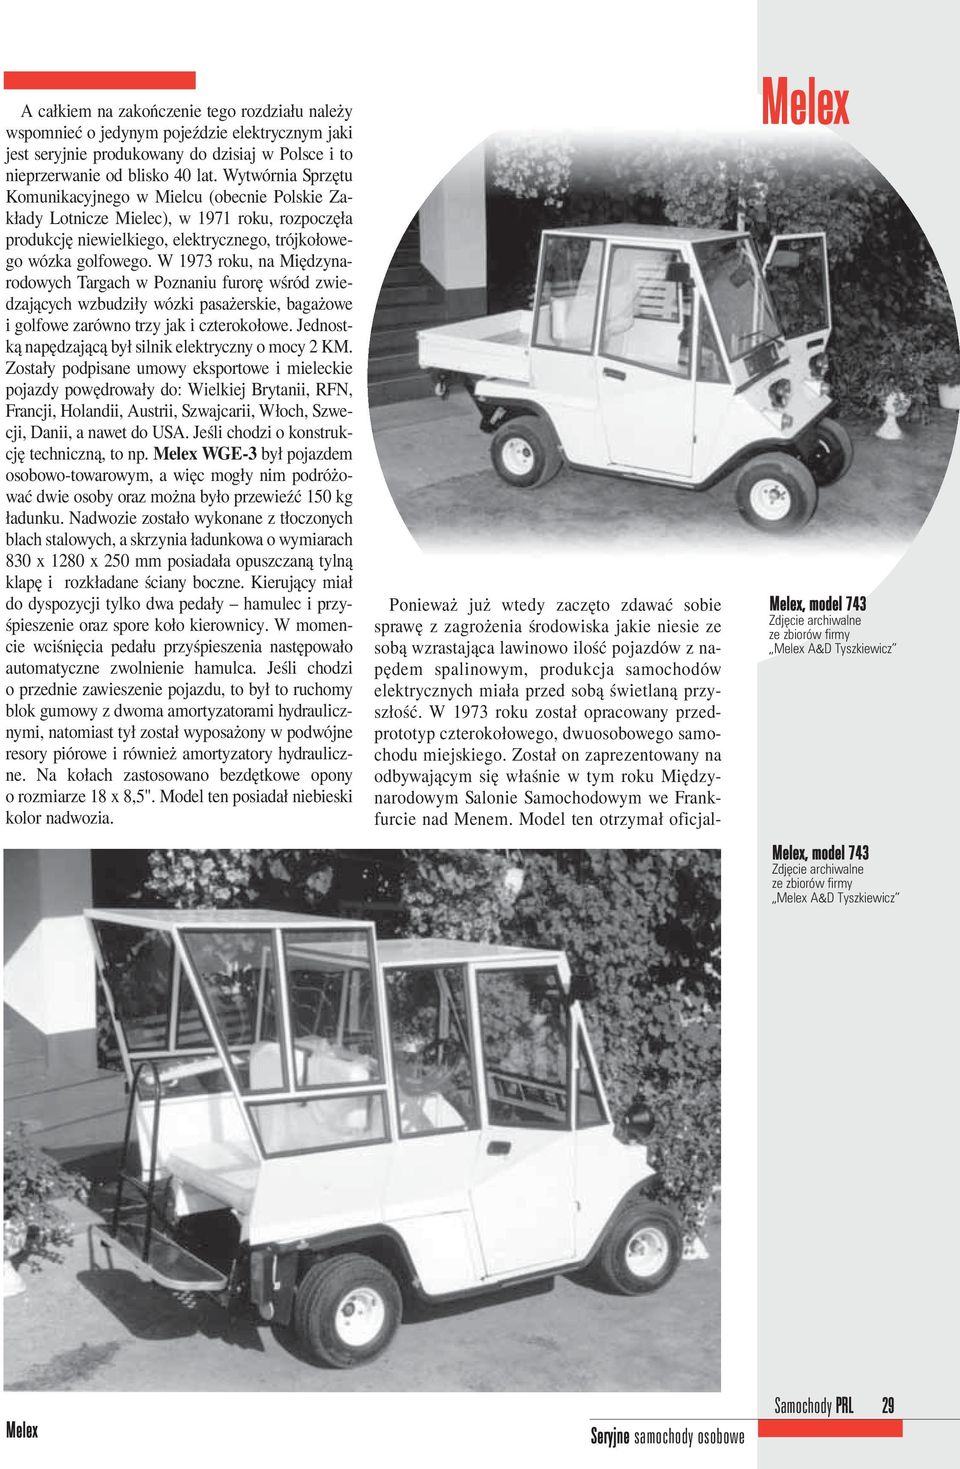 W 1973 roku, na Międzynarodowych Targach w Poznaniu furorę wśród zwiedzających wzbudziły wózki pasażerskie, bagażowe i golfowe zarówno trzy jak i czterokołowe.